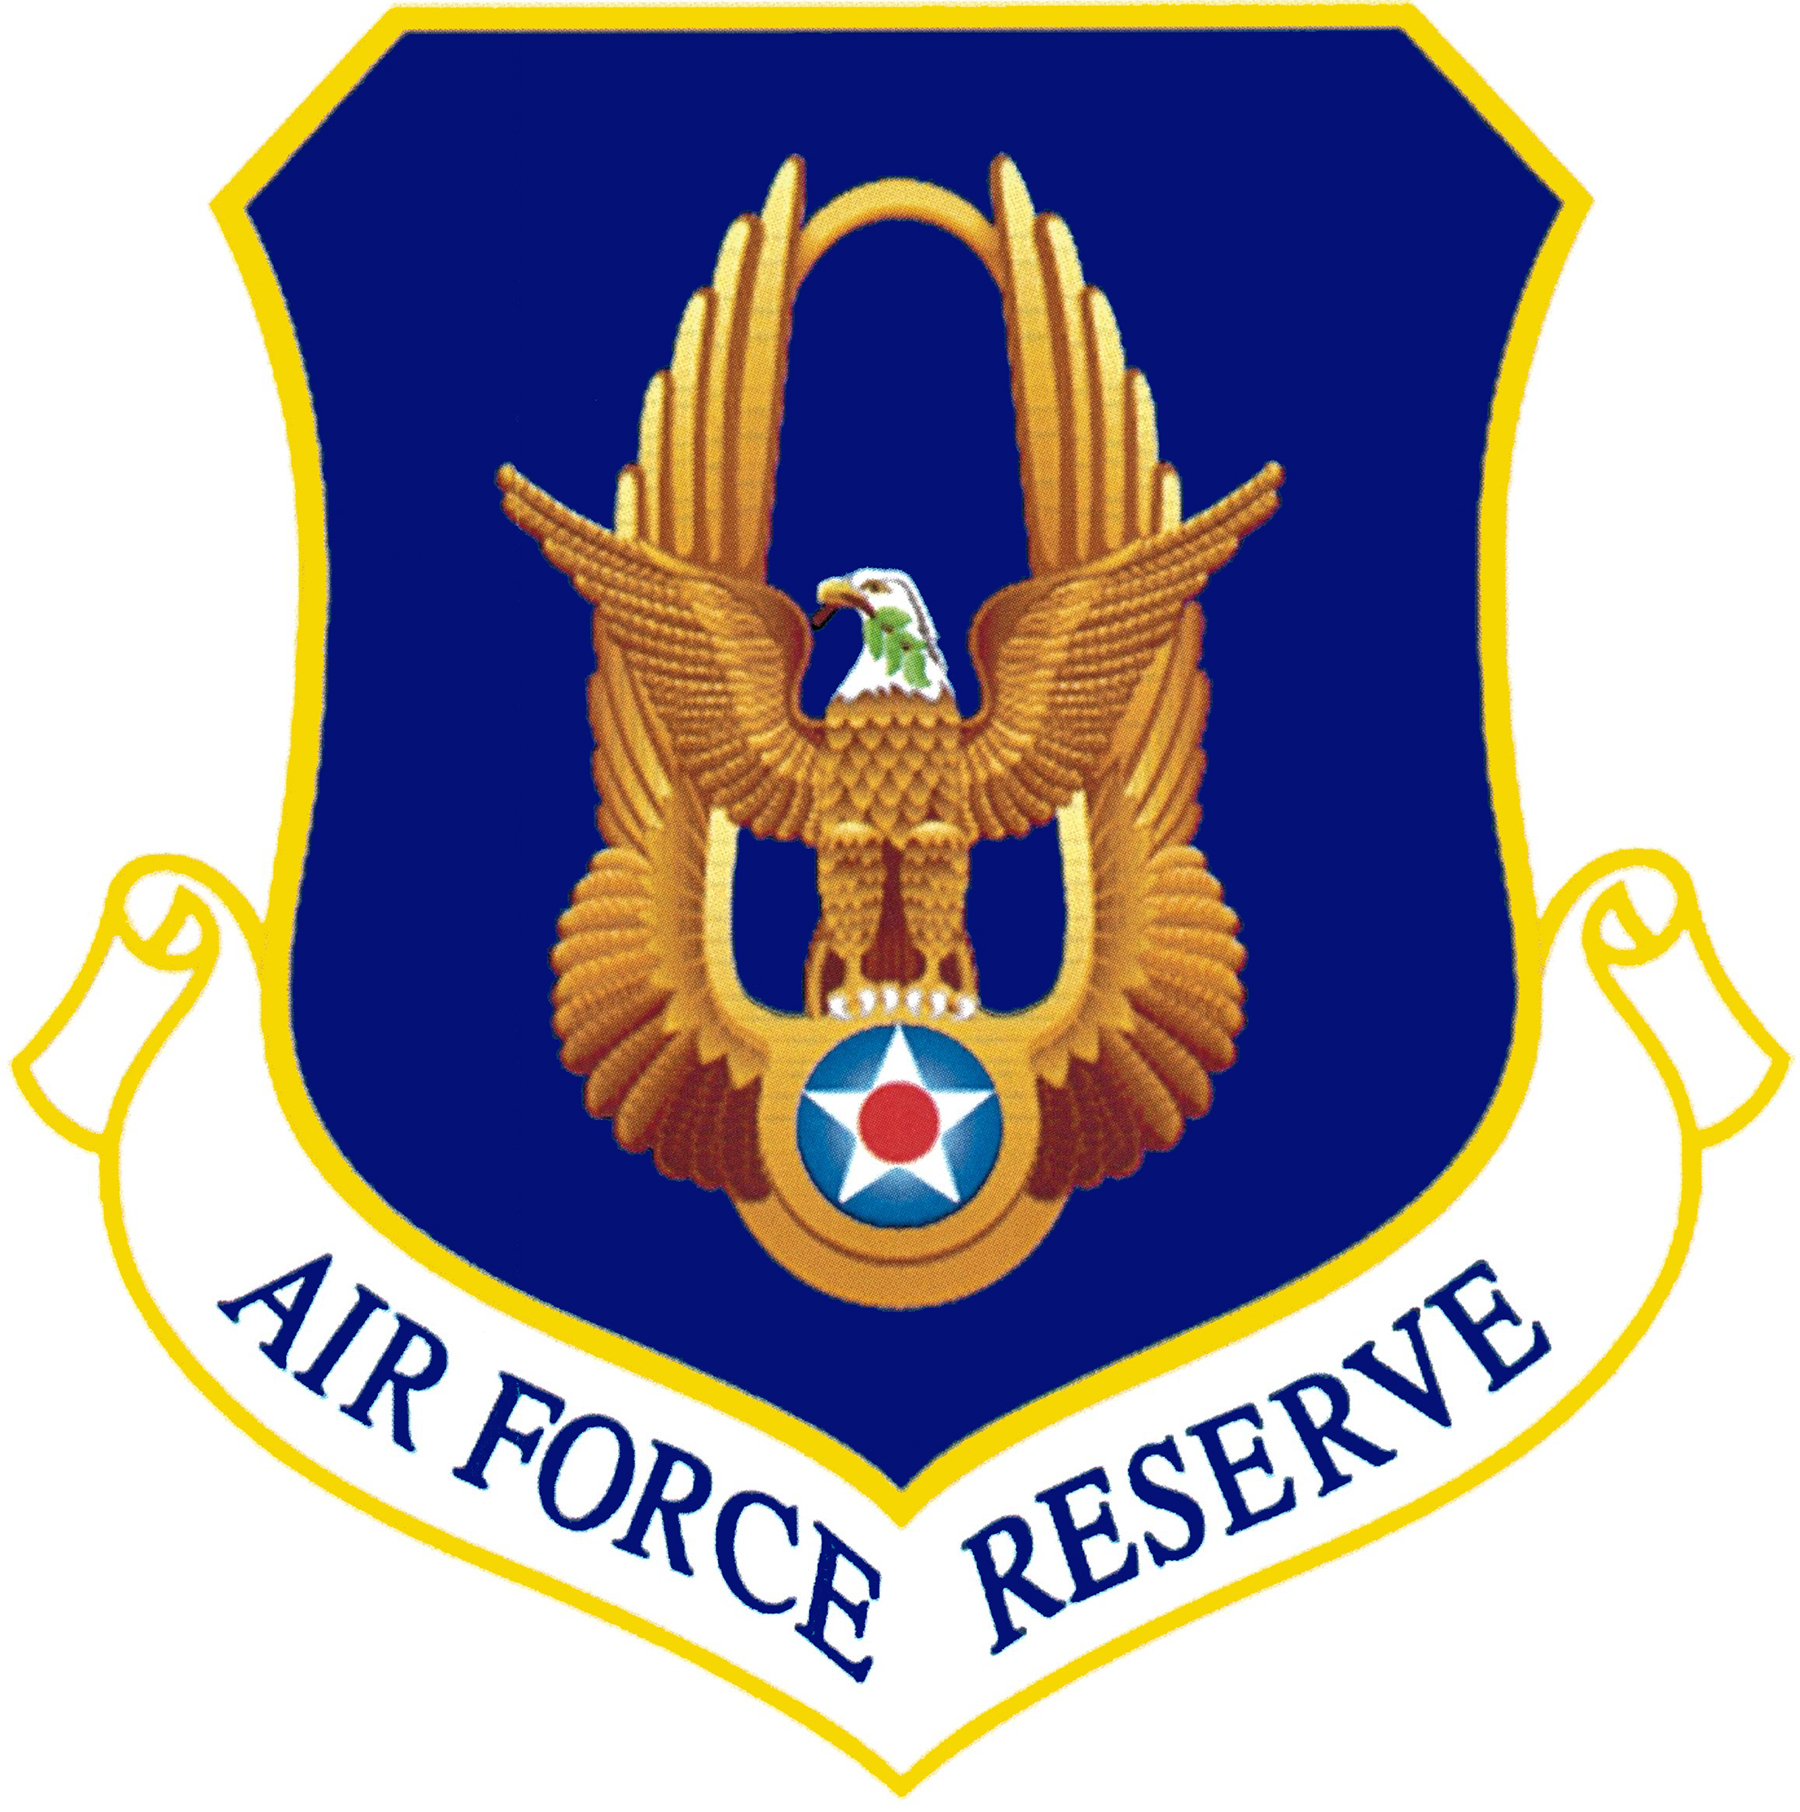 Air Force Reserve Symbol